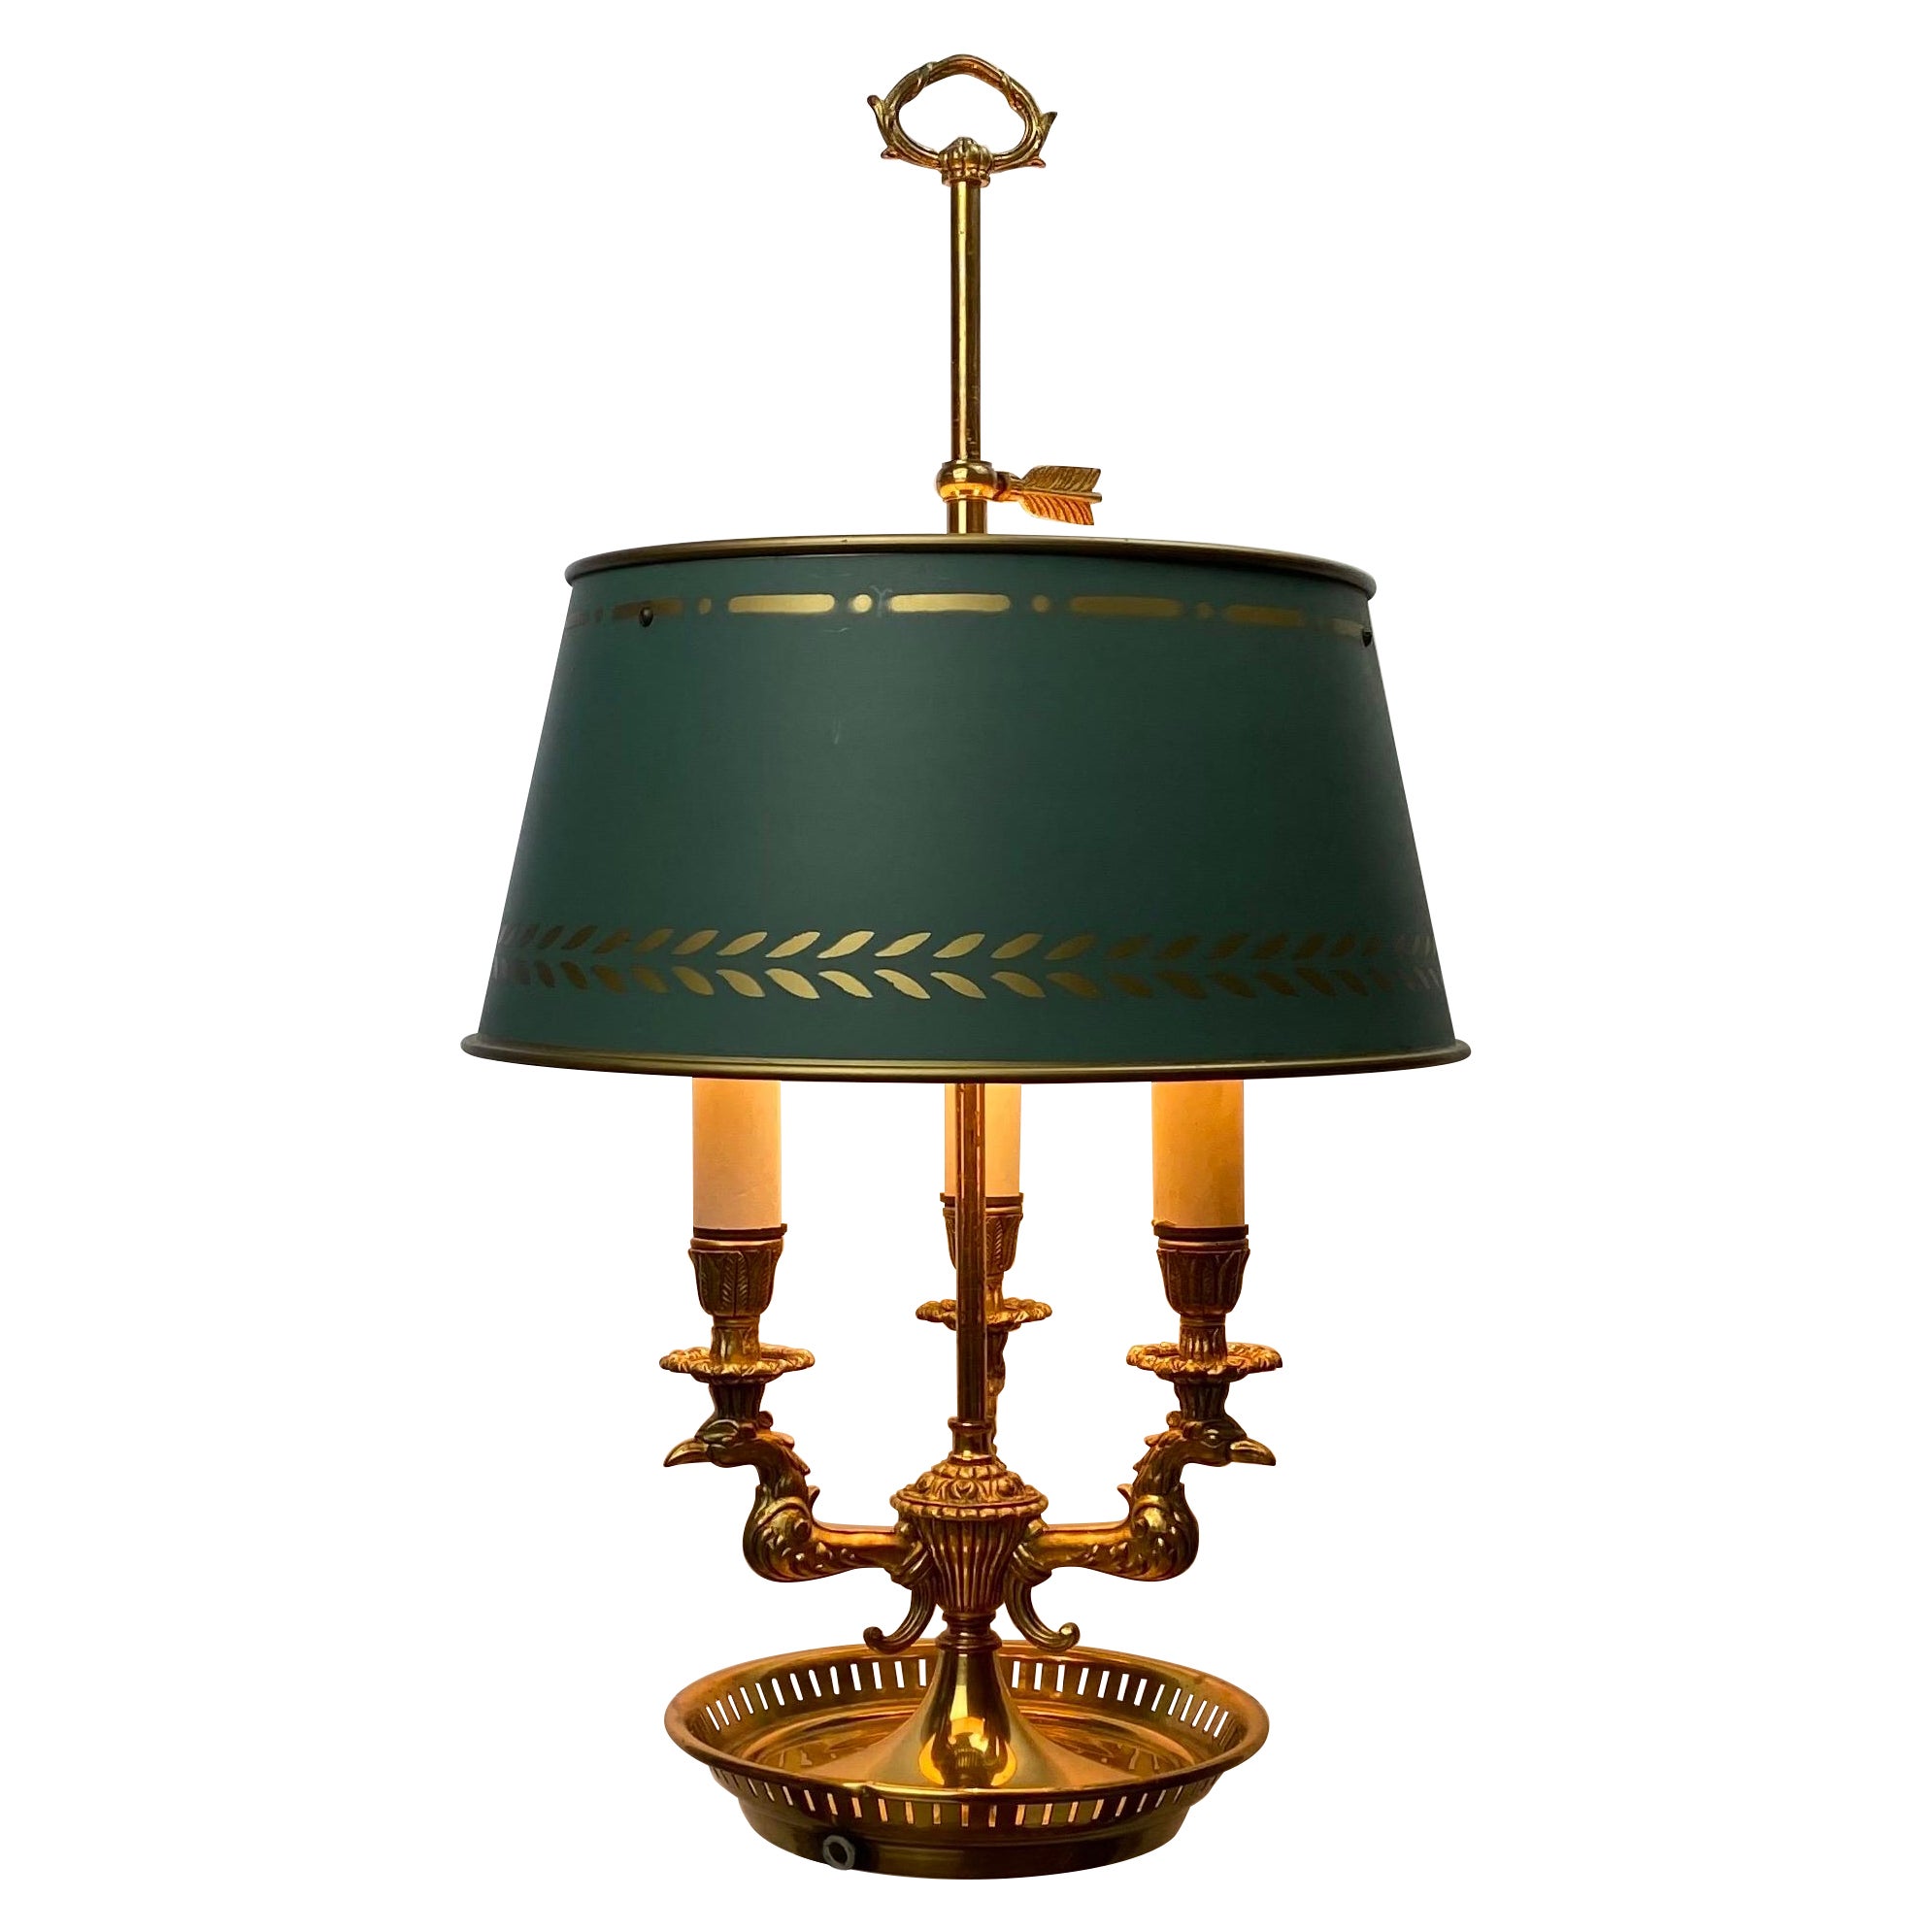 Lampe bouillotte Empire française en bronze doré avec 3 bras d'aigle